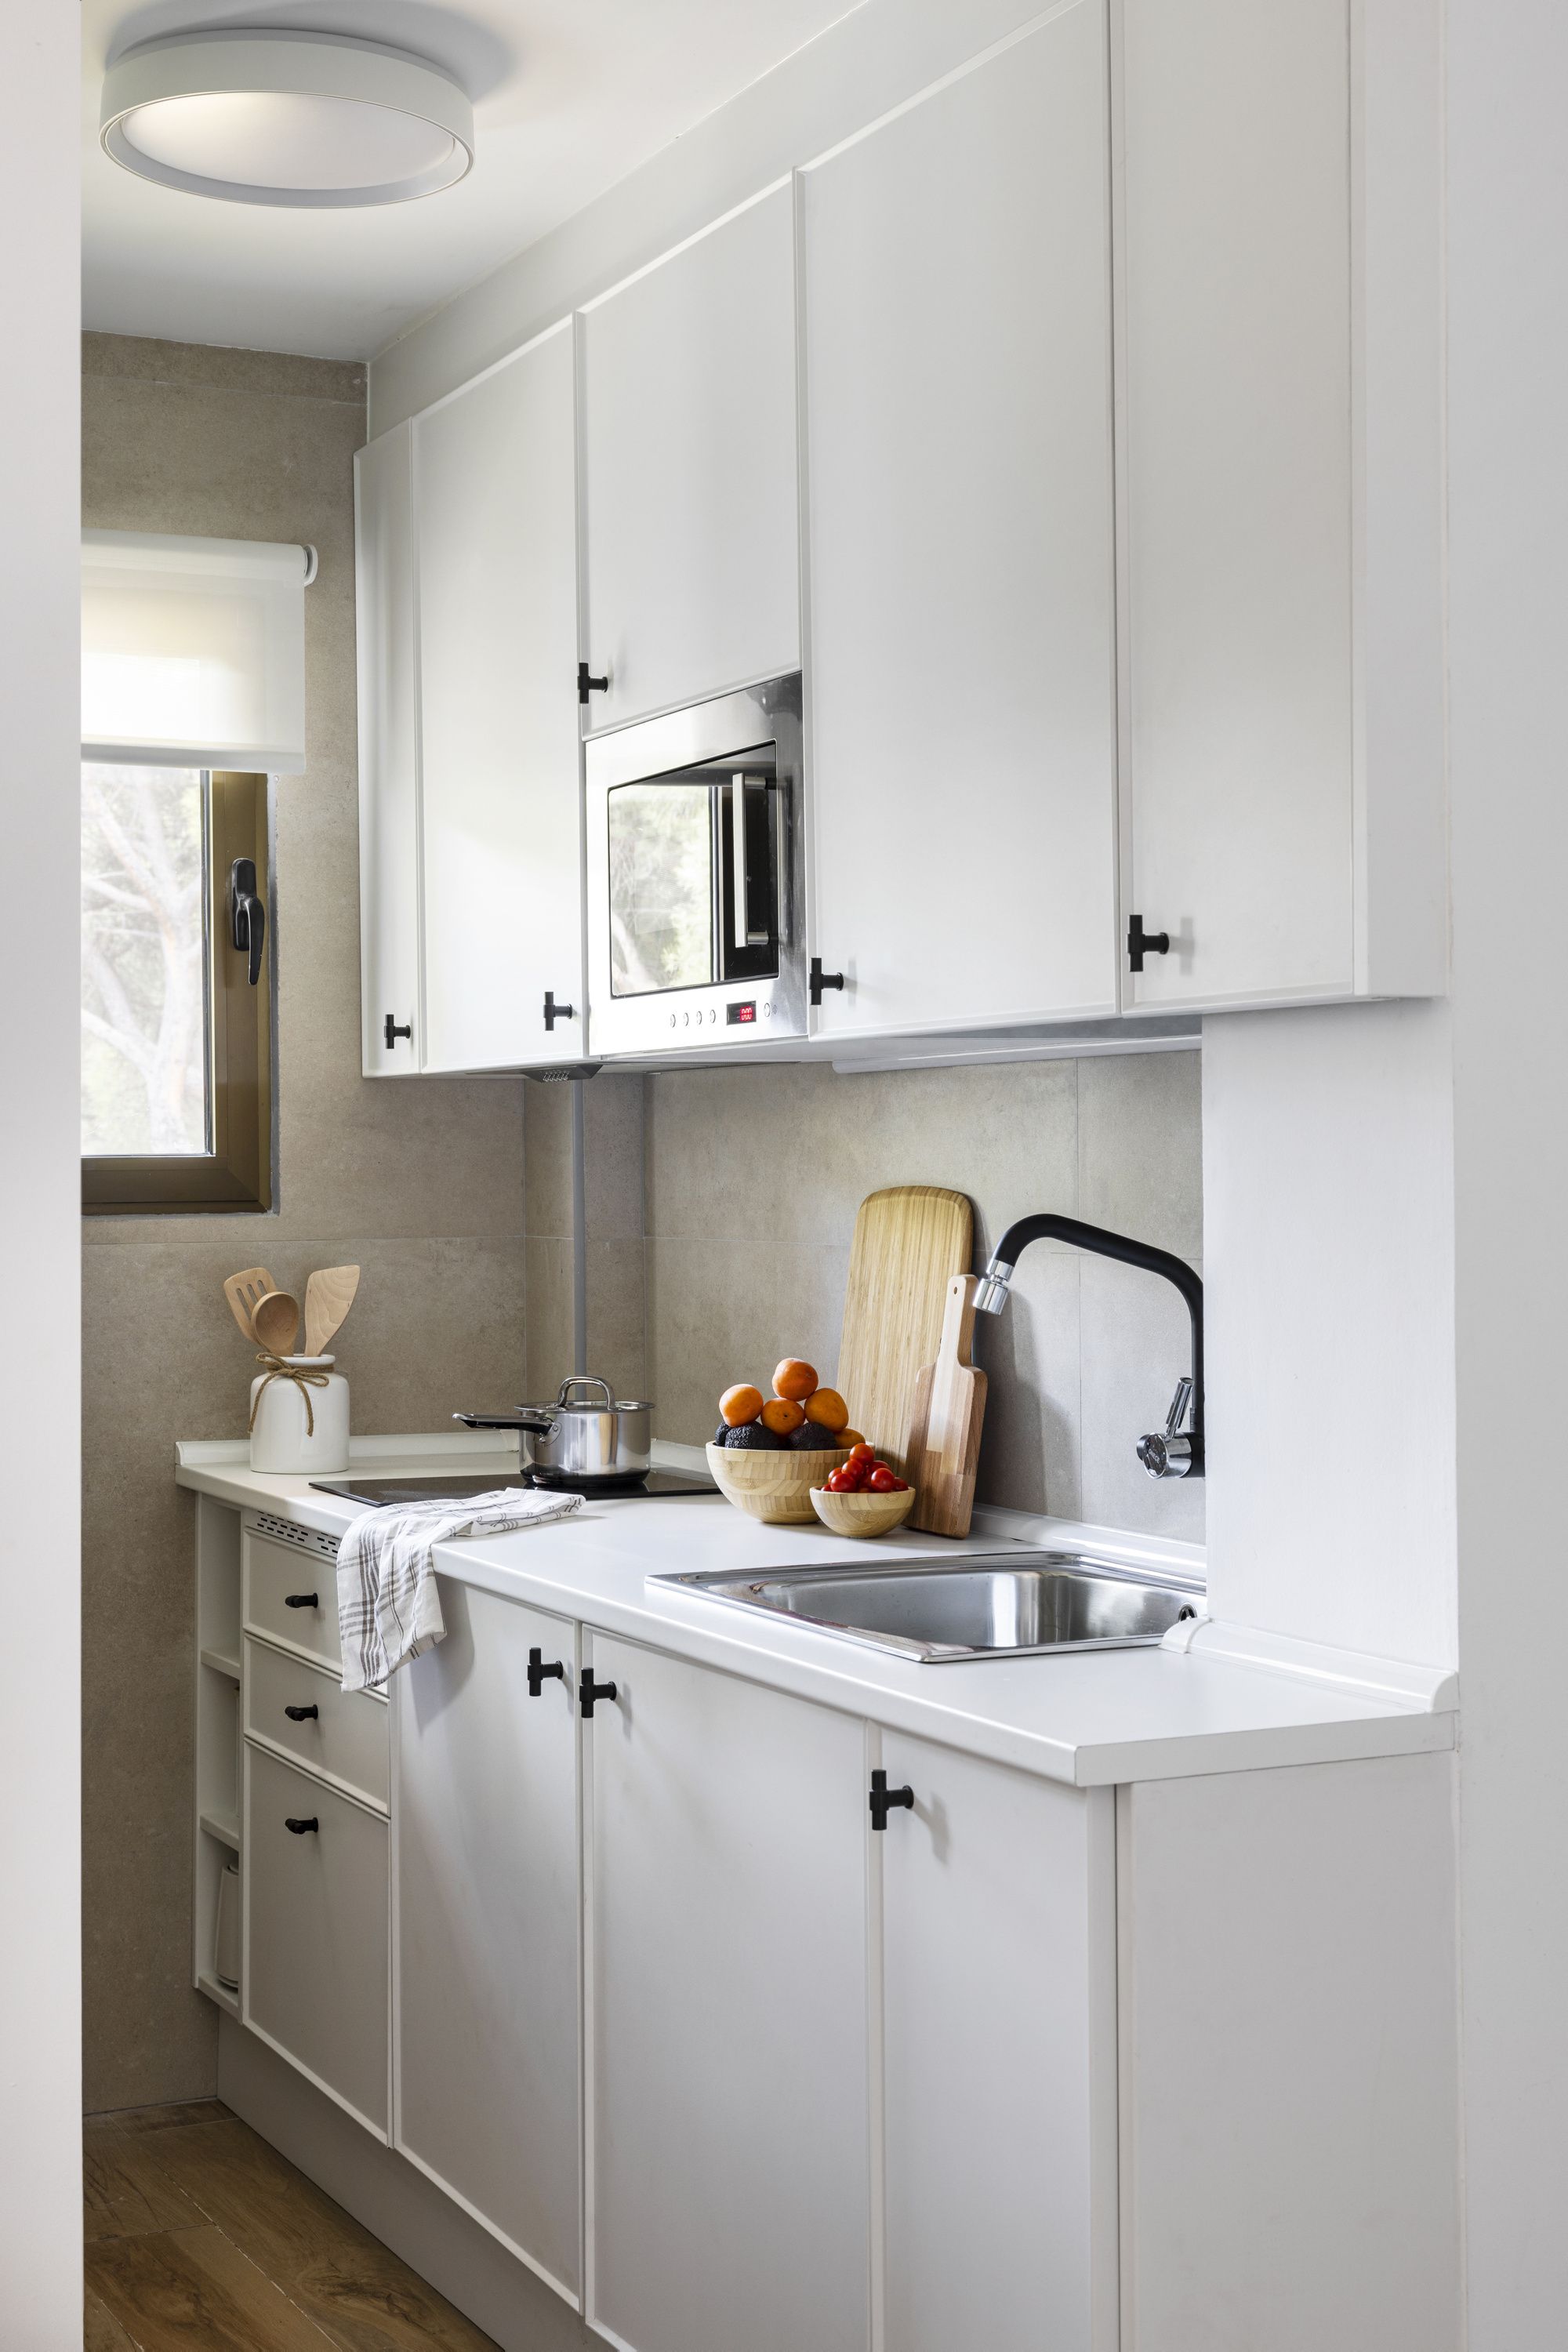 El diseño de las cocinas pequeñas modernas  Cocinas pequenas modernas,  Diseño muebles de cocina, Muebles de cocina